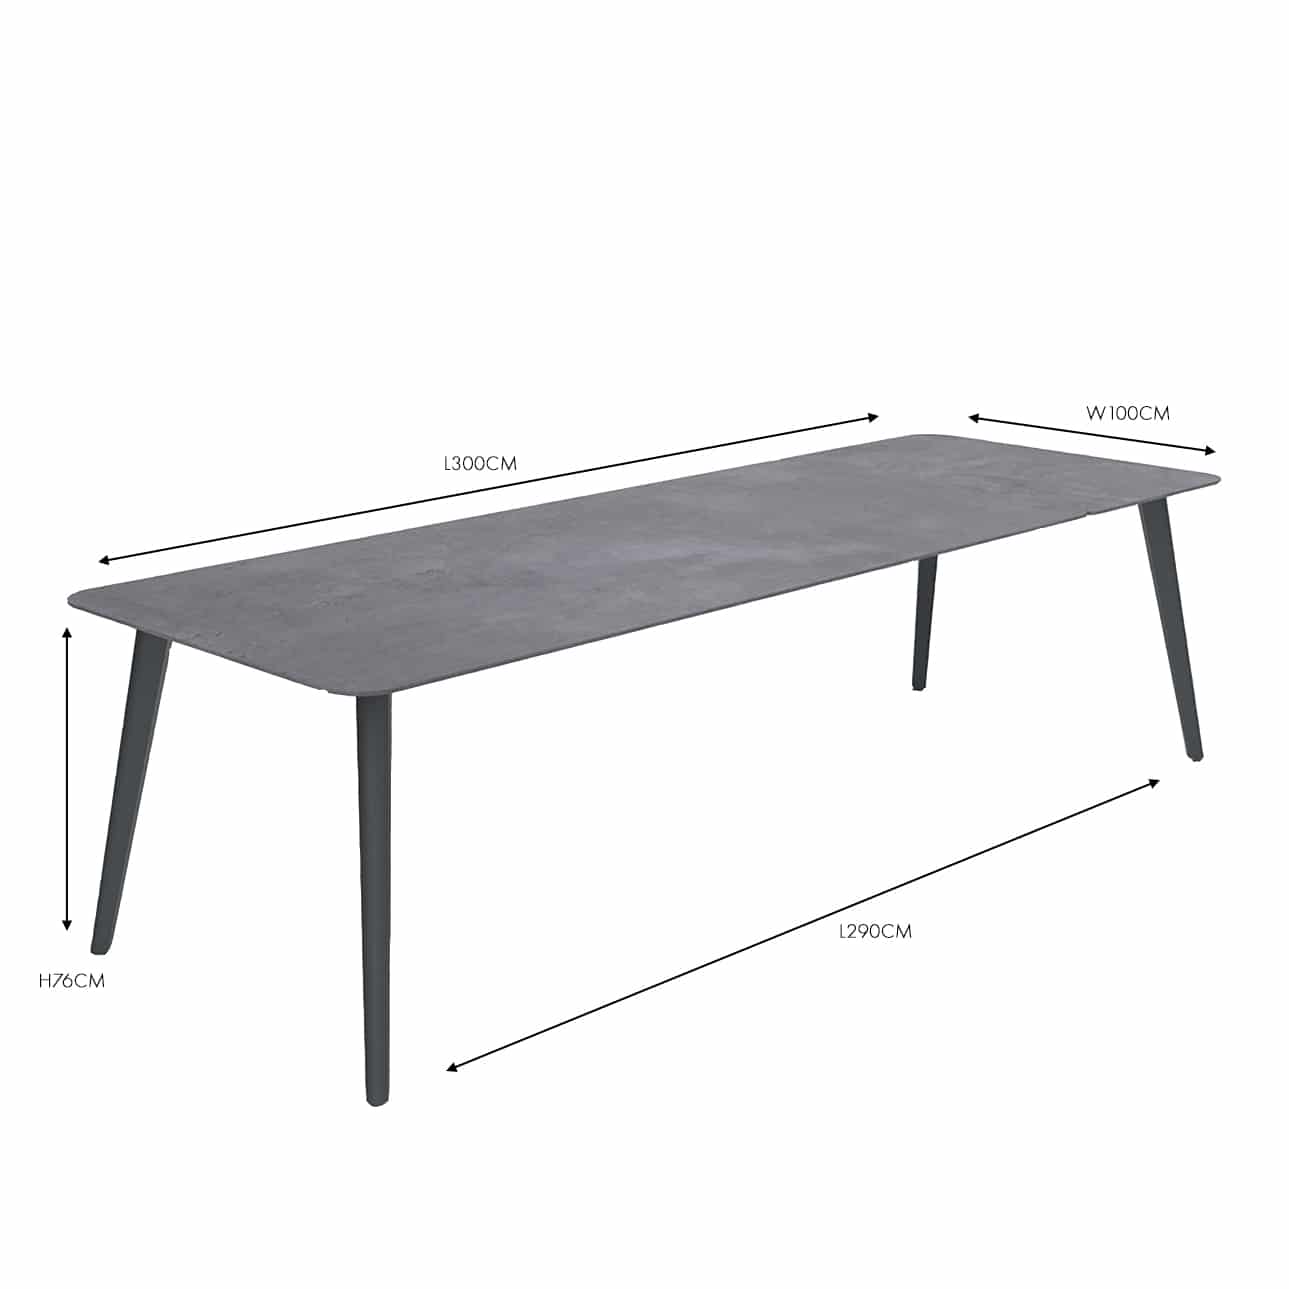 Design Warehouse - 127627 - Kove Outdoor Aluminium Extendible Dining Table  - Coal